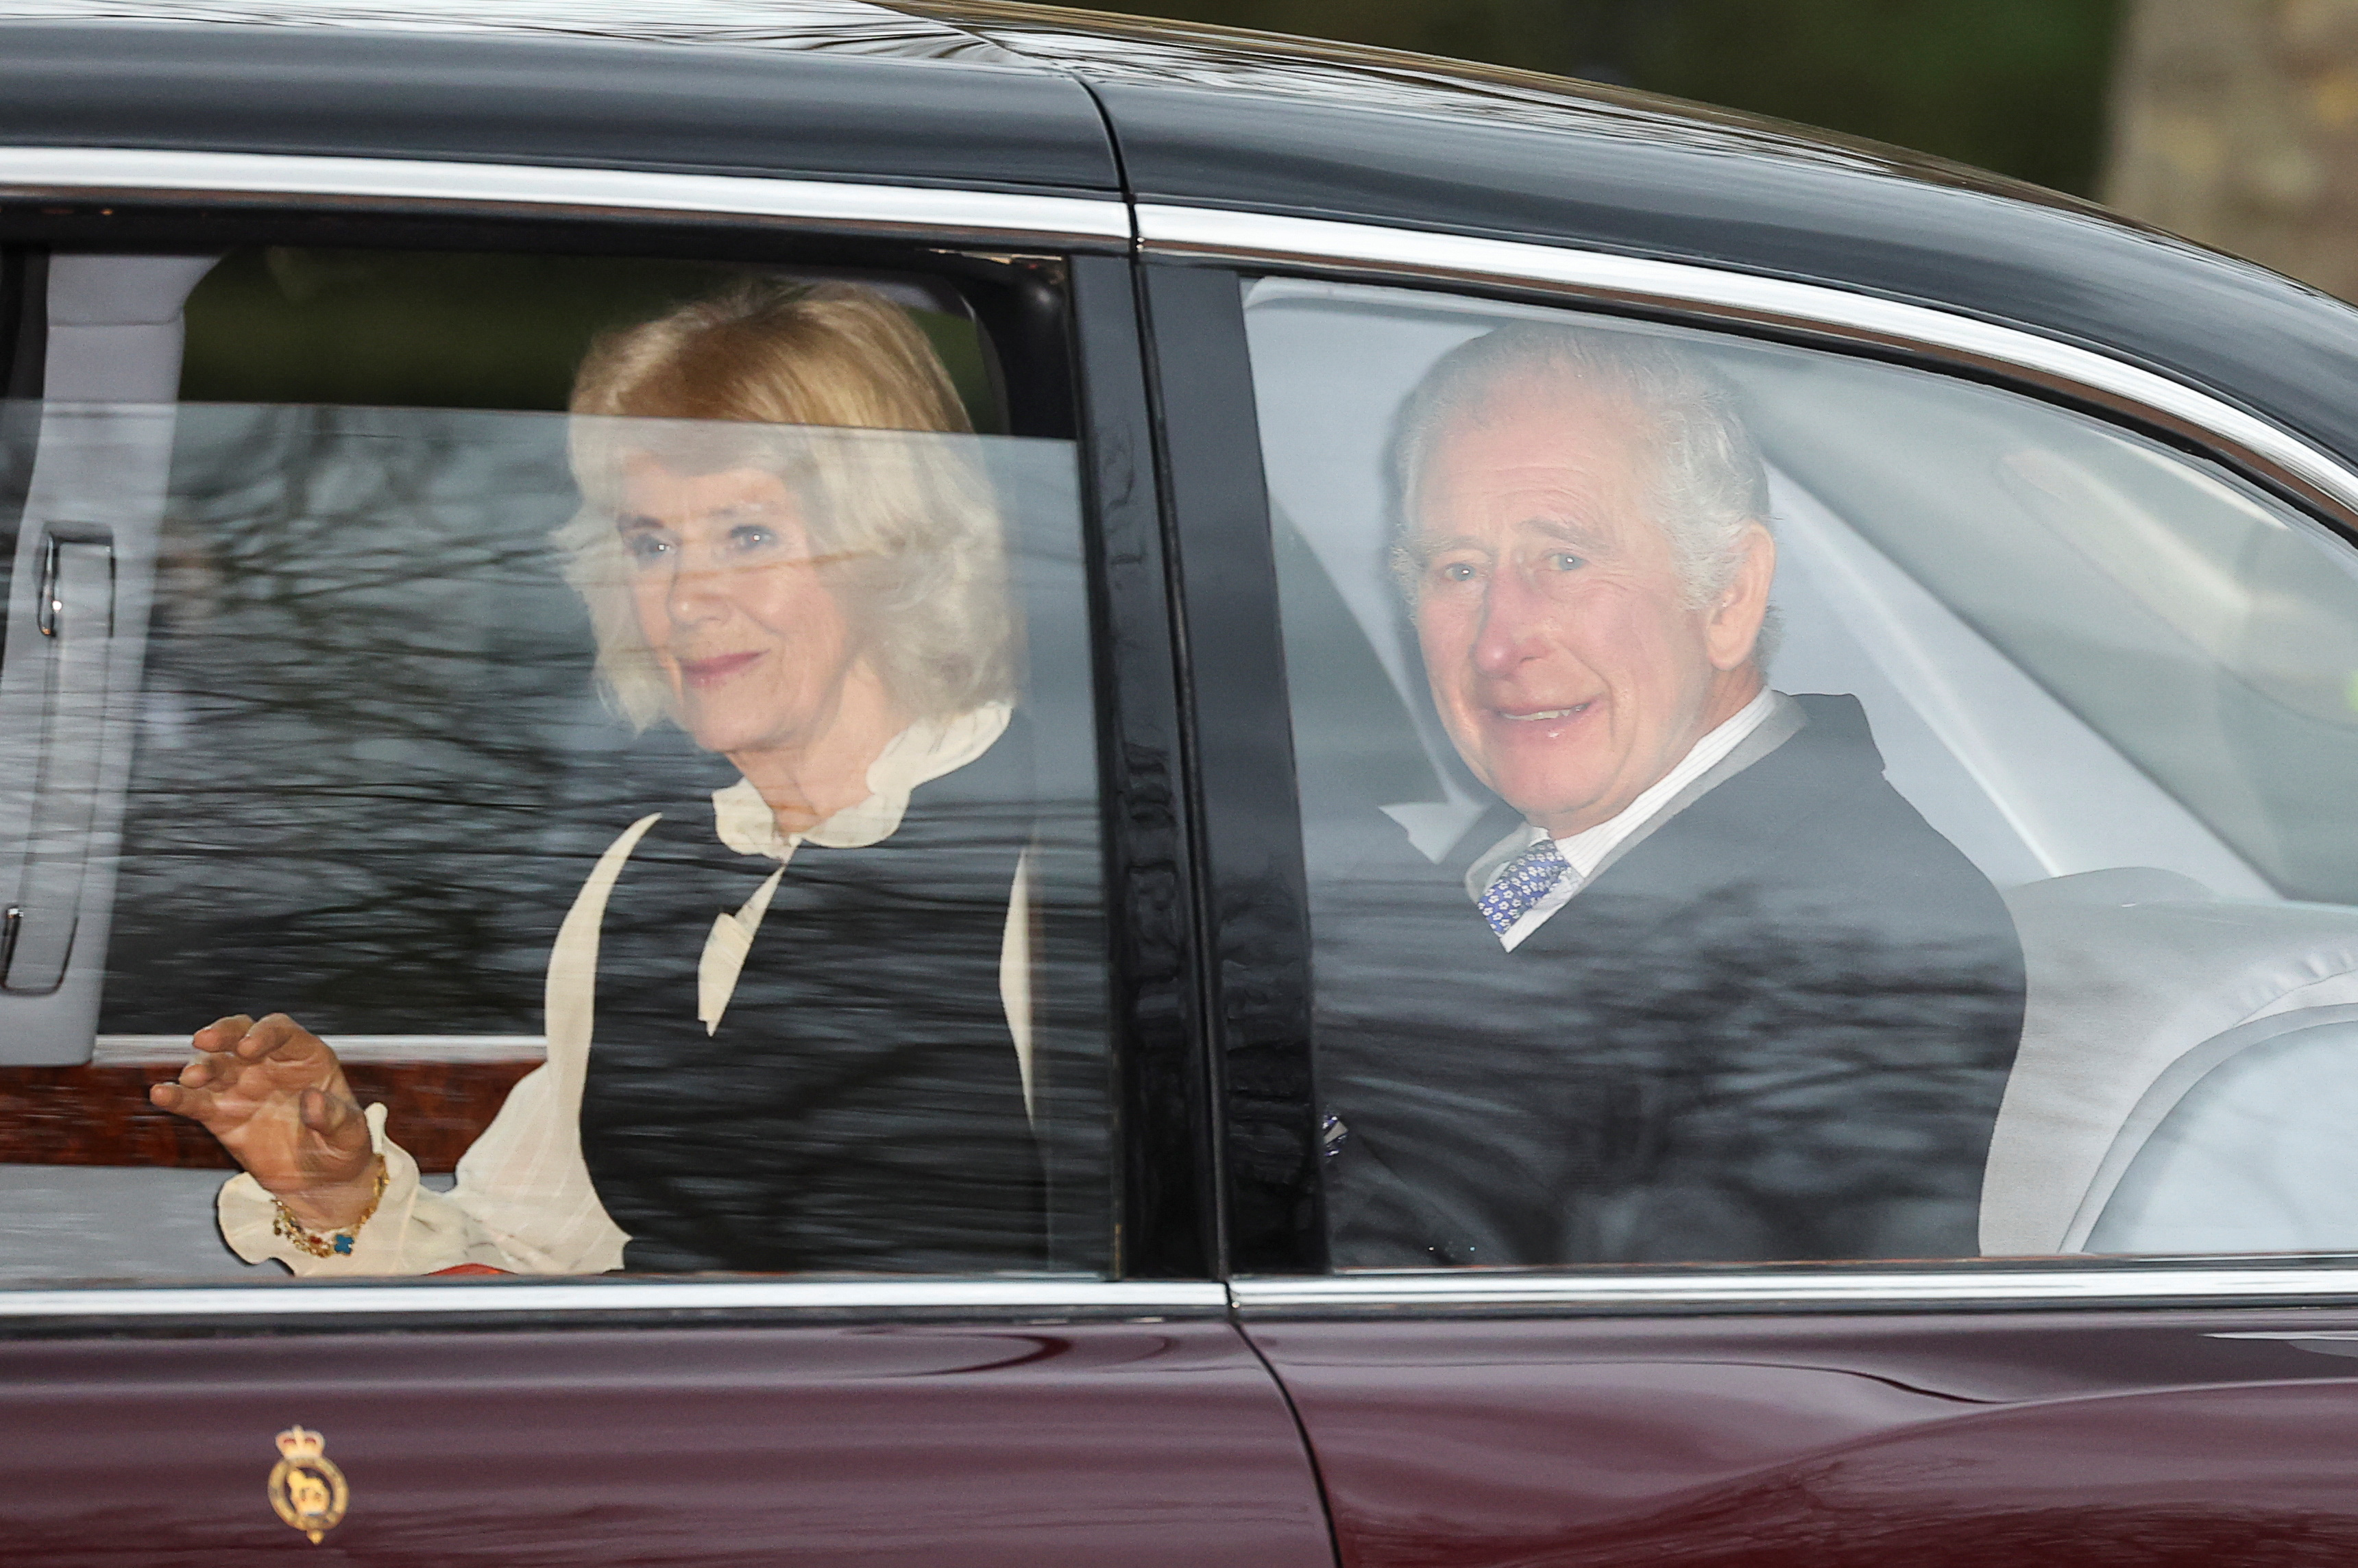 Le roi Charles a été repéré mardi pour la première fois depuis la révélation de son diagnostic de cancer.